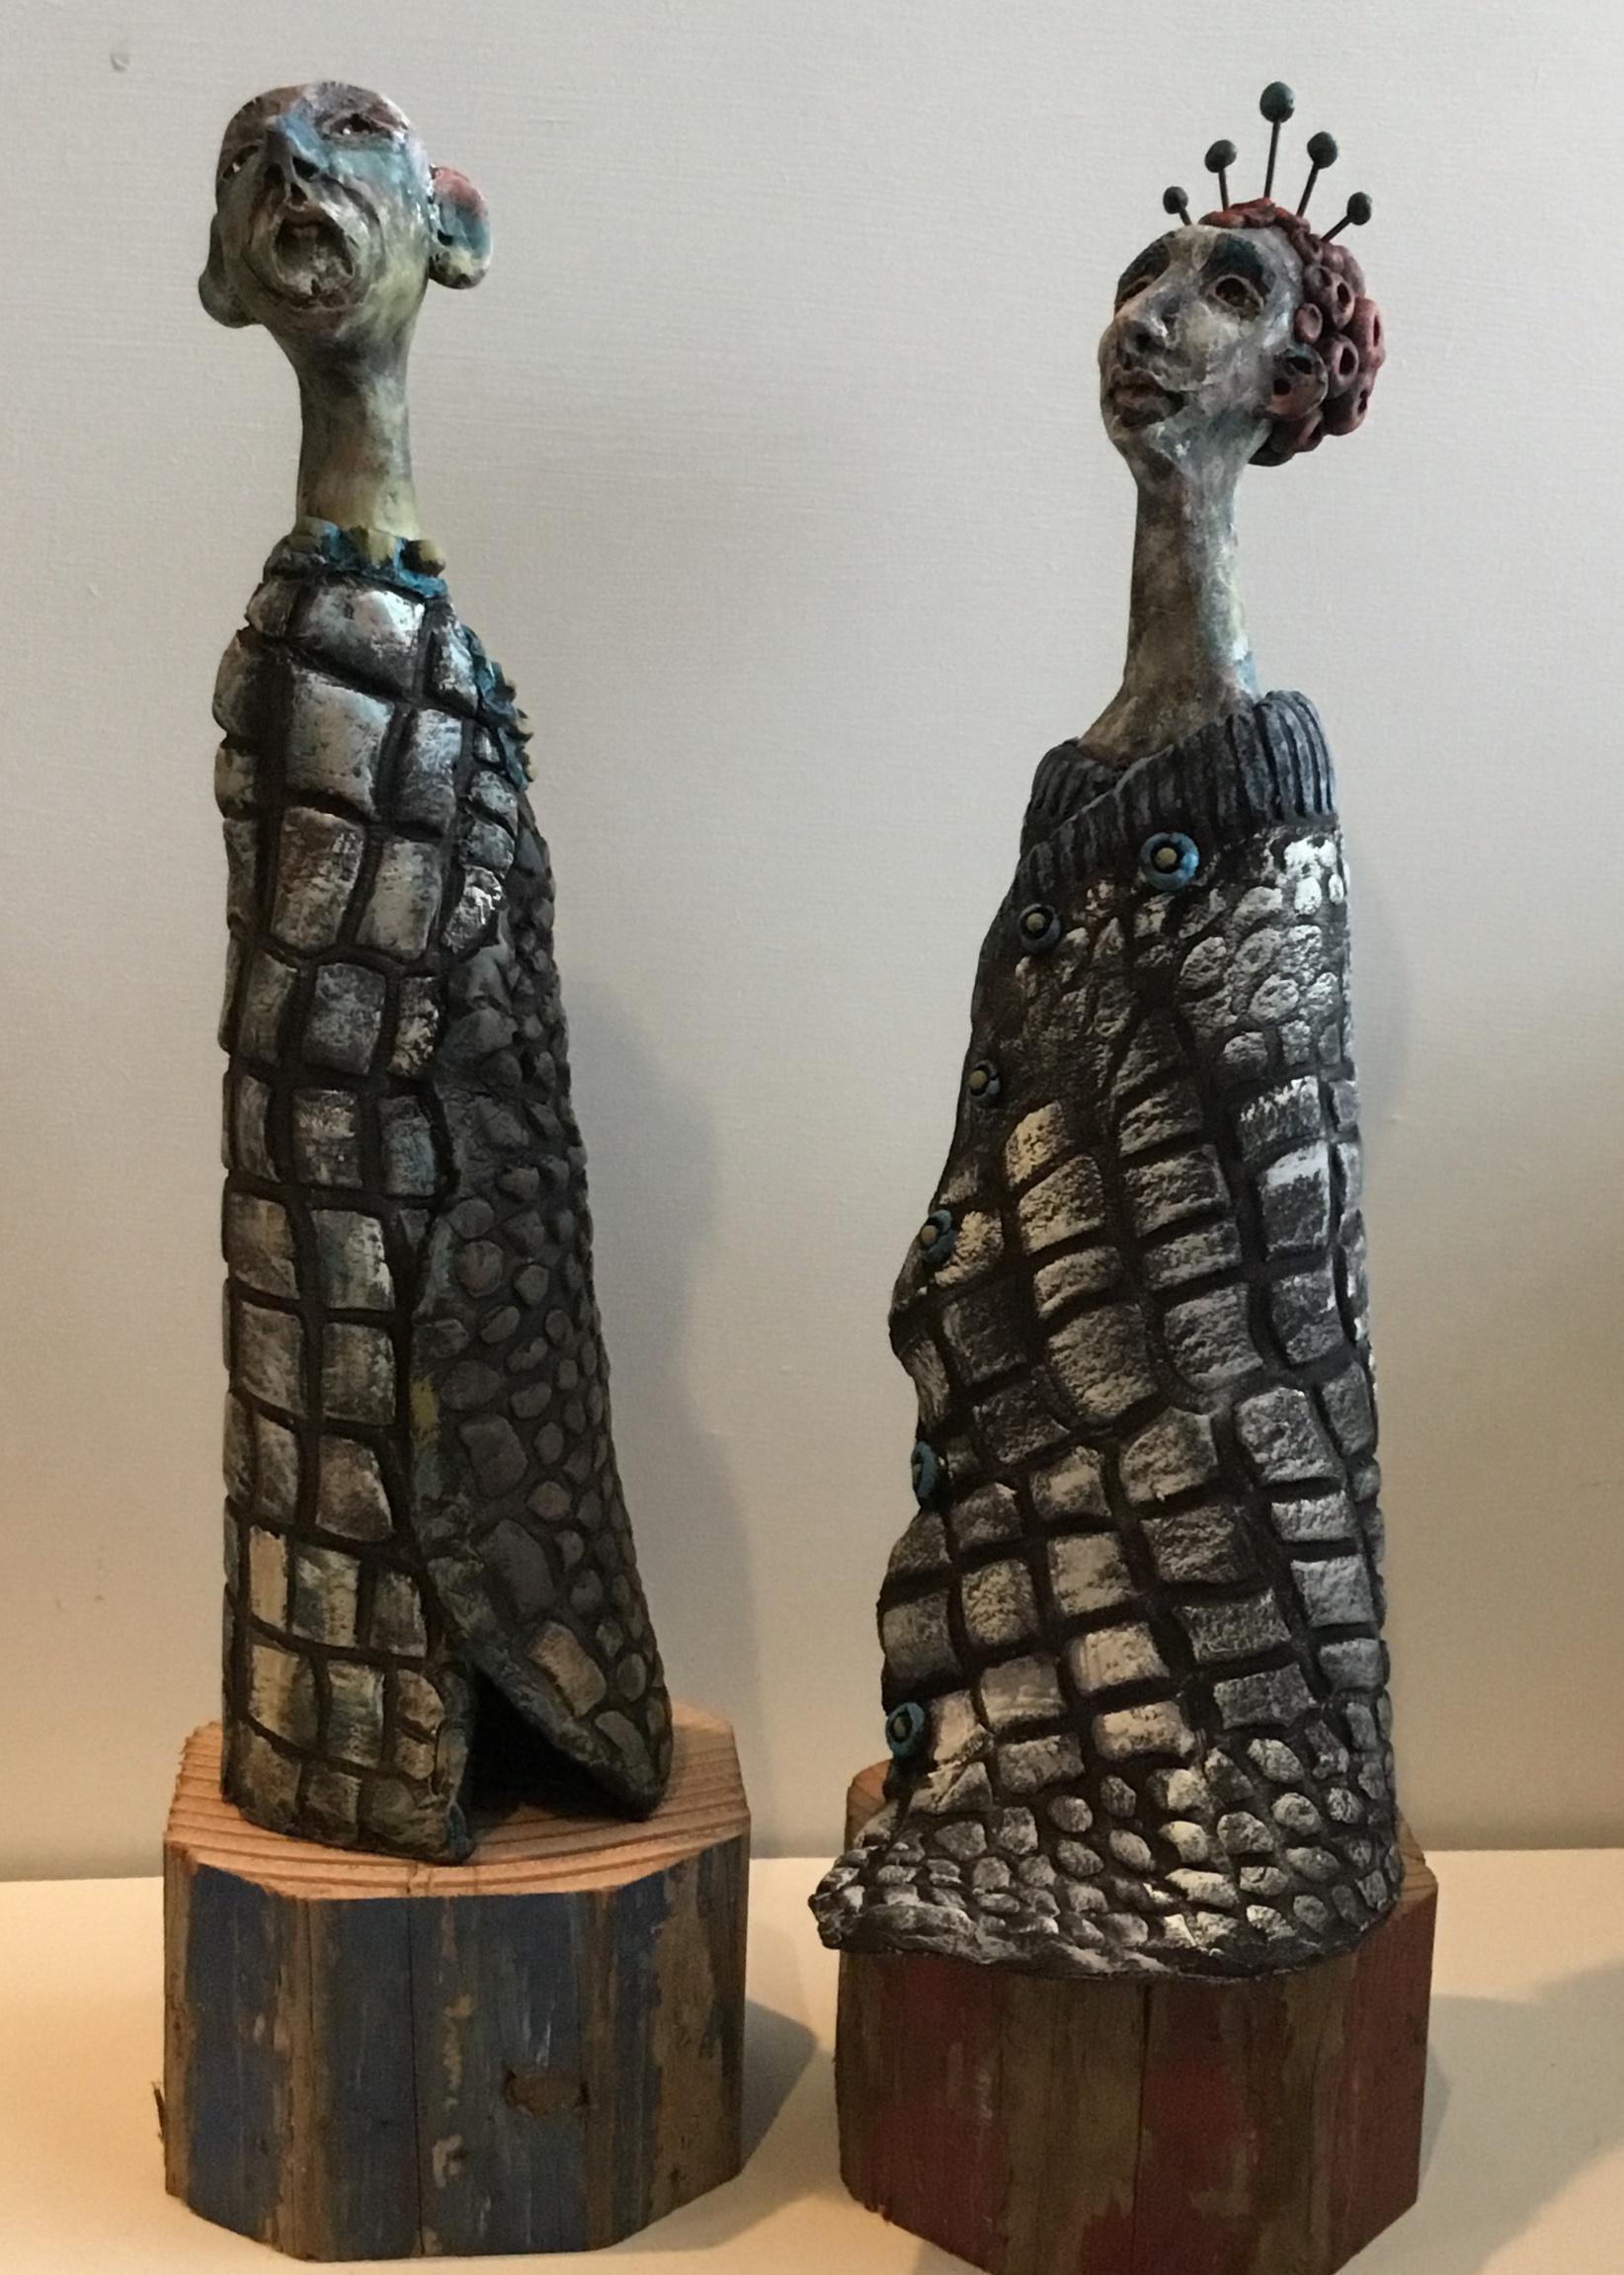 A Couple
Ceramic
10"
$360. (pair)